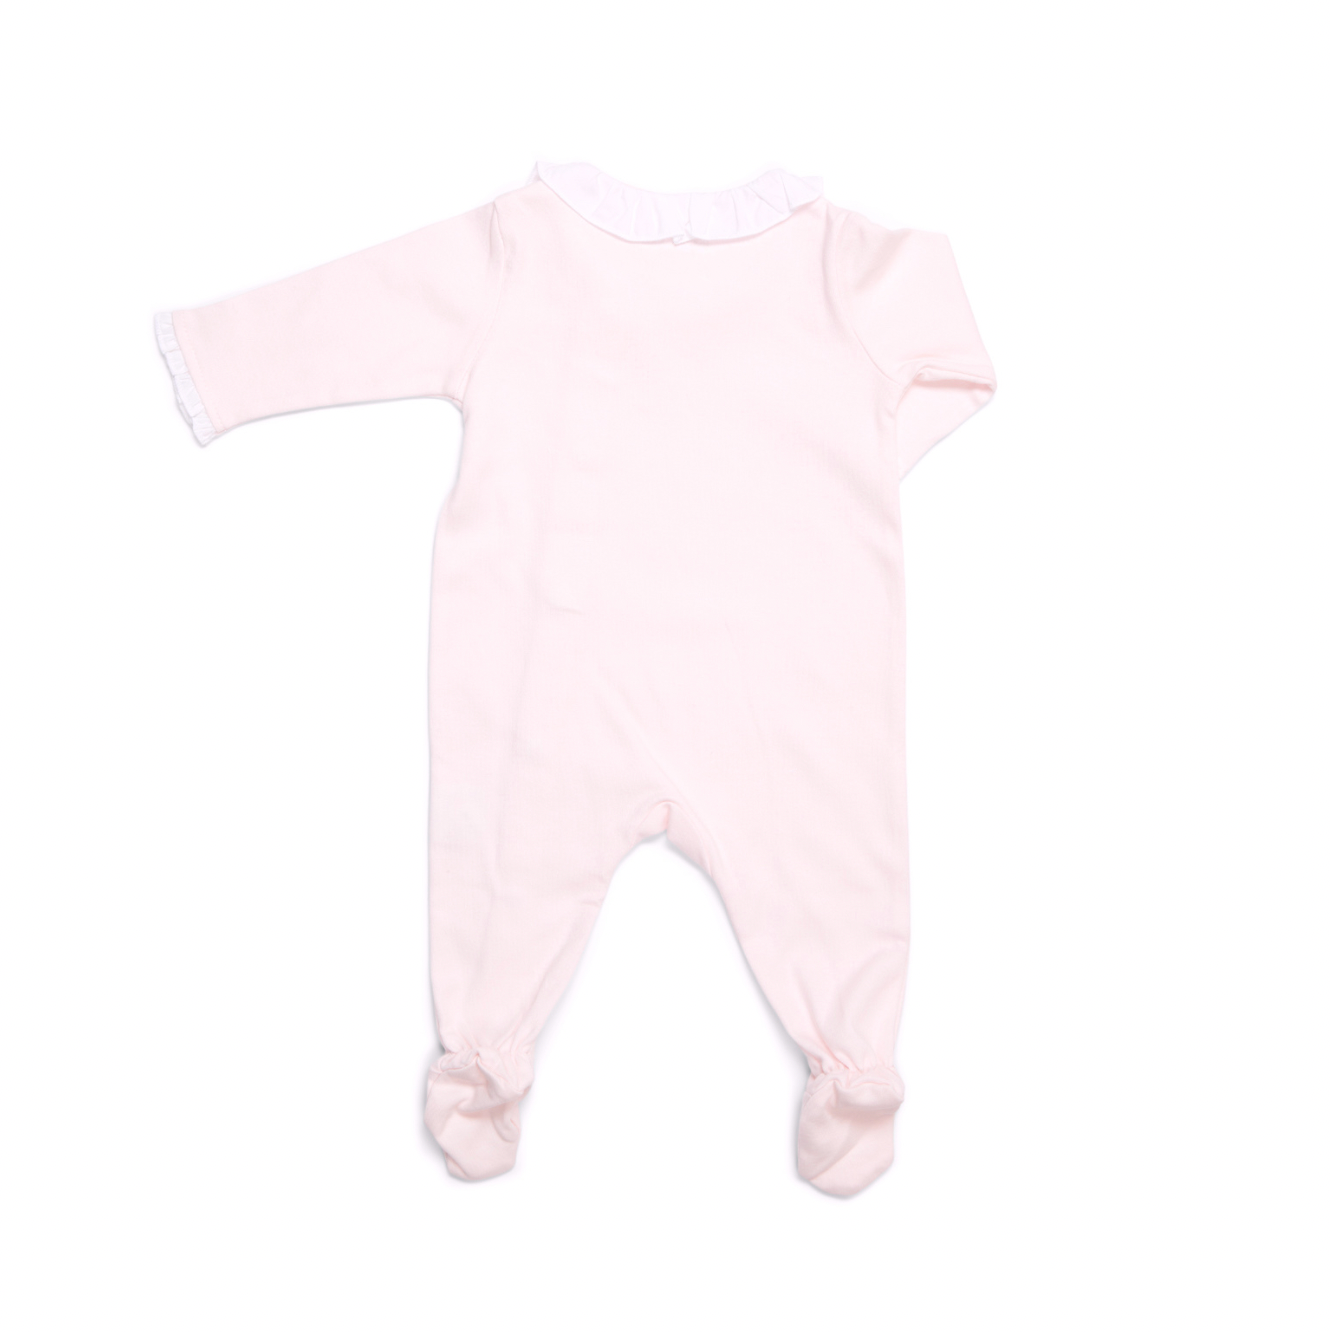 Baby Strampler mit Rüschen soft pink